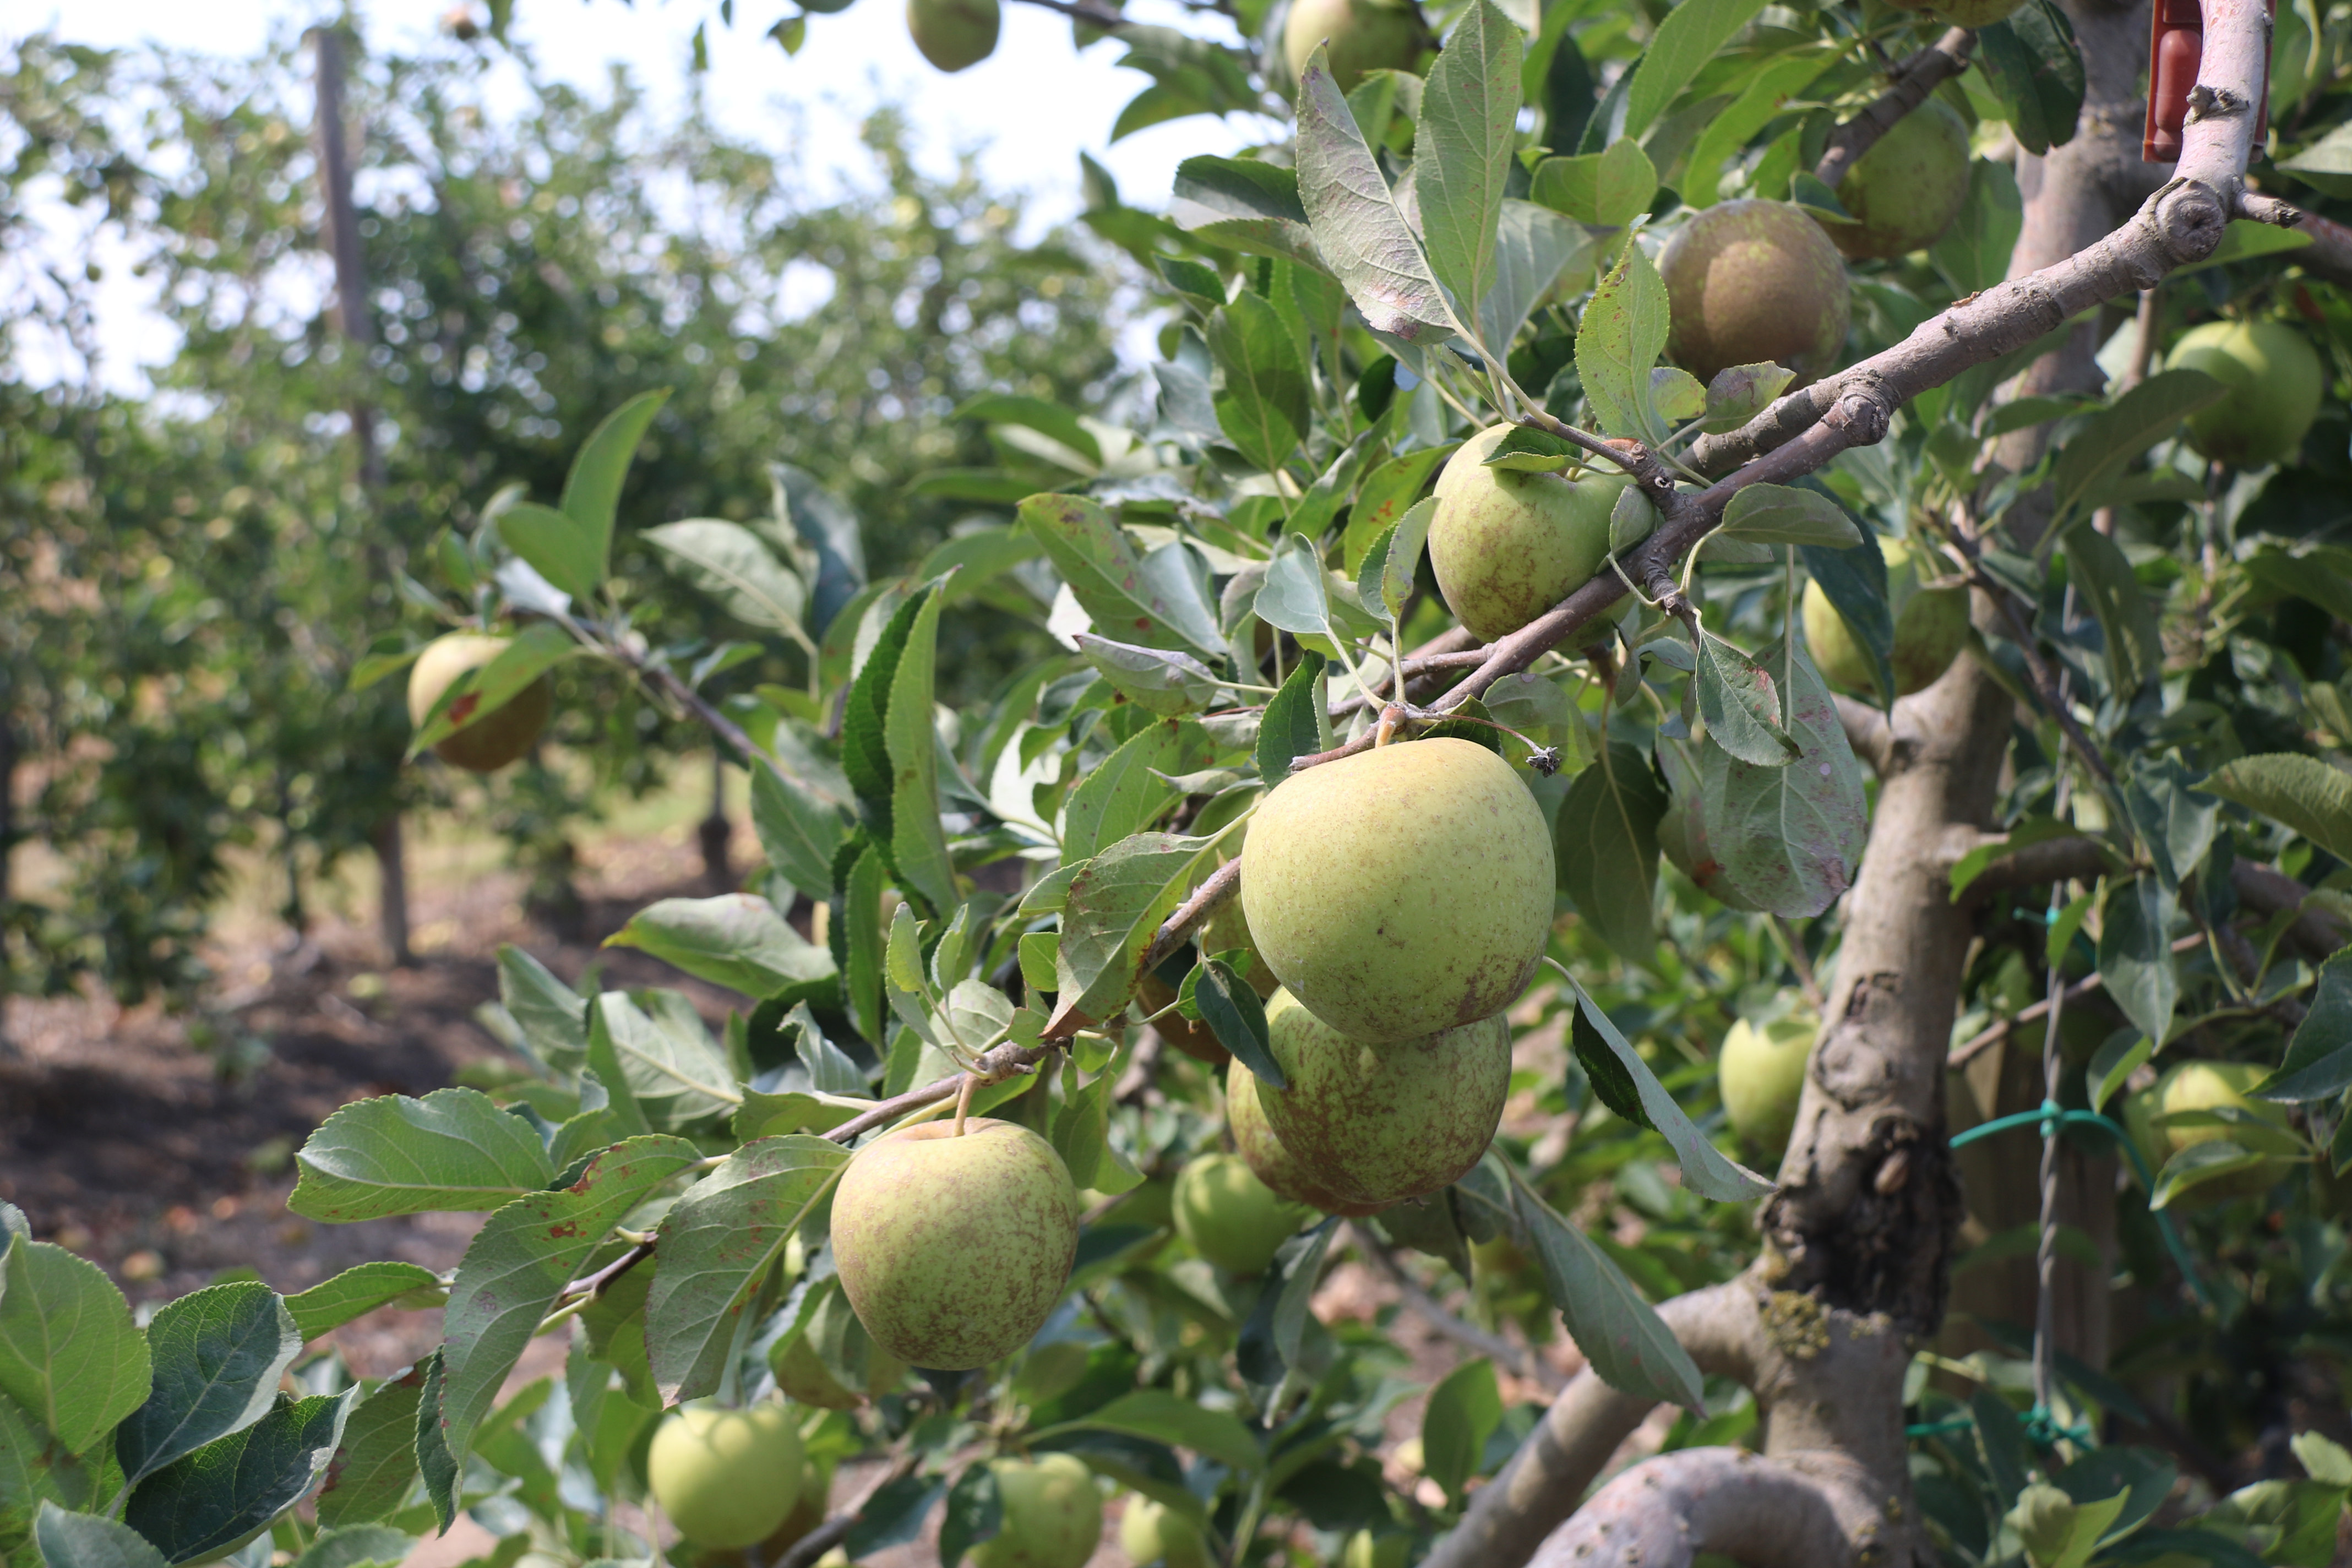 Els pagesos gironins asseguren una bona collita de poma, malgrat la declaració d'emergència a l'aqüífer Fluvià-Muga